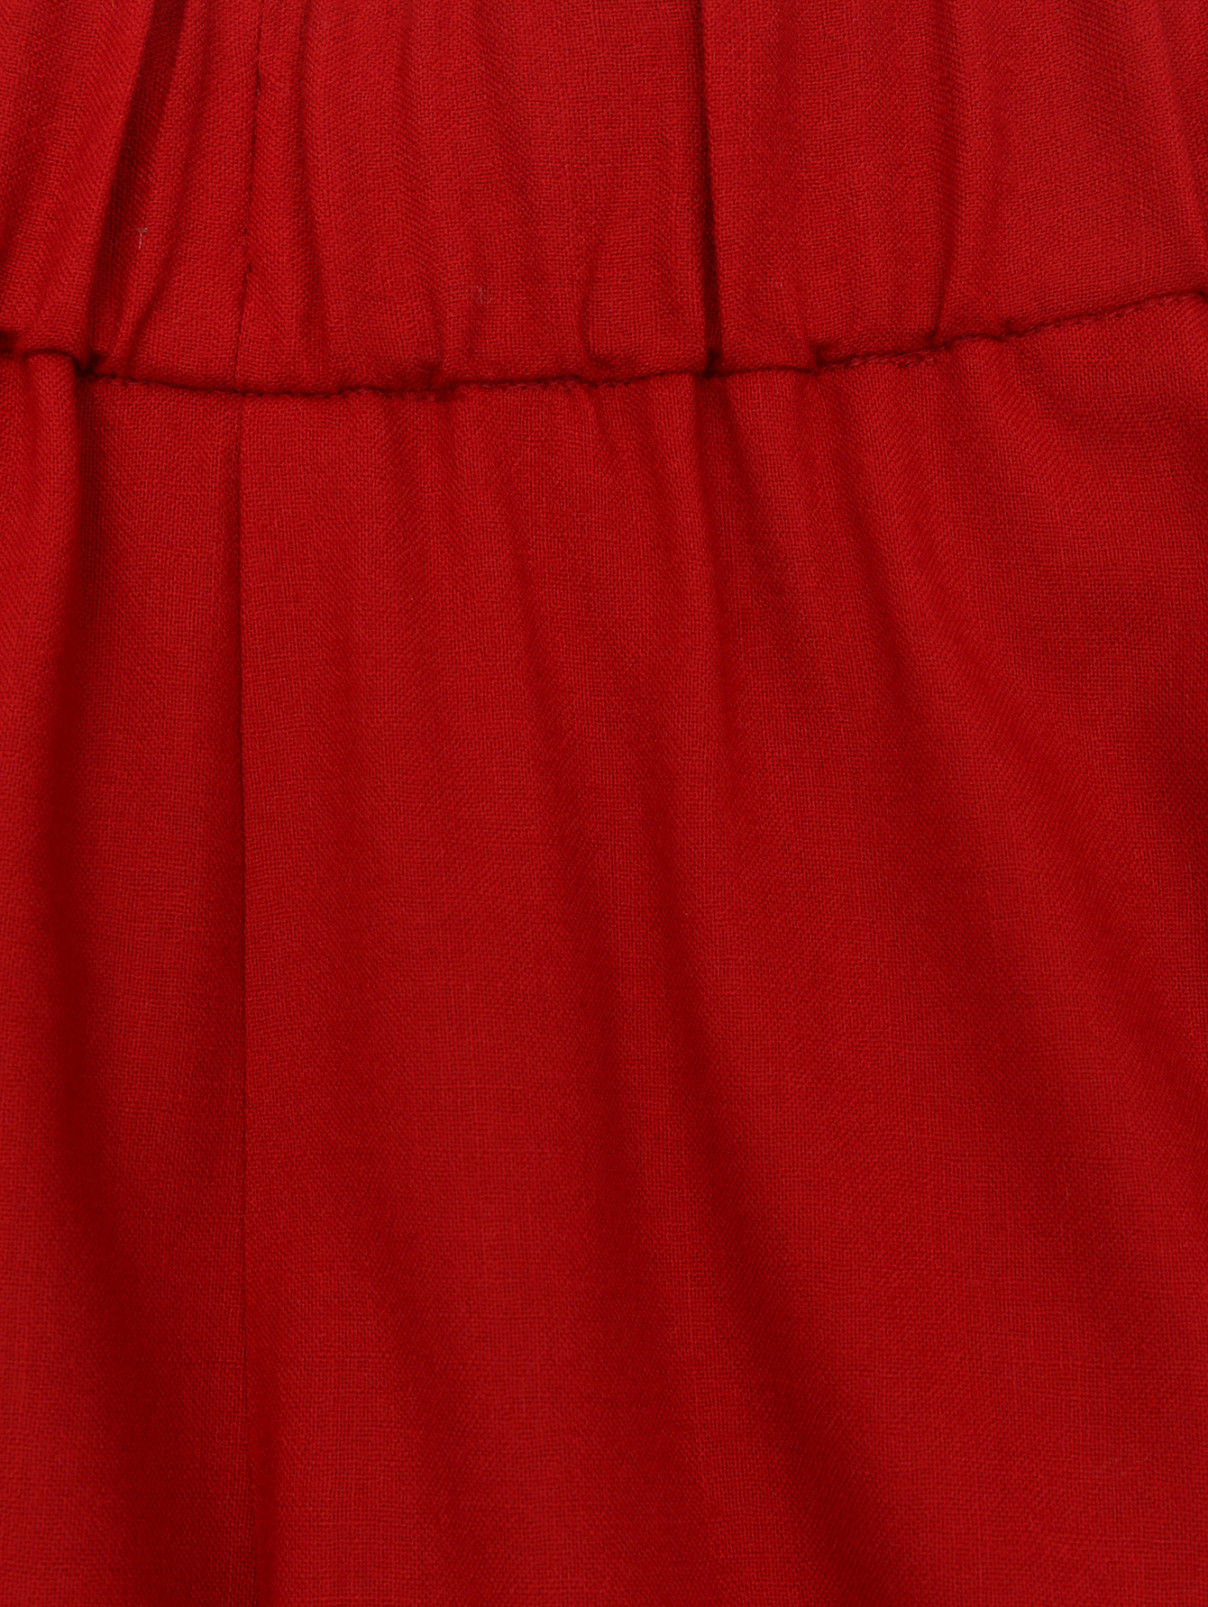 Широкие брюки из шерсти на резинке Aspesi  –  Деталь  – Цвет:  Красный